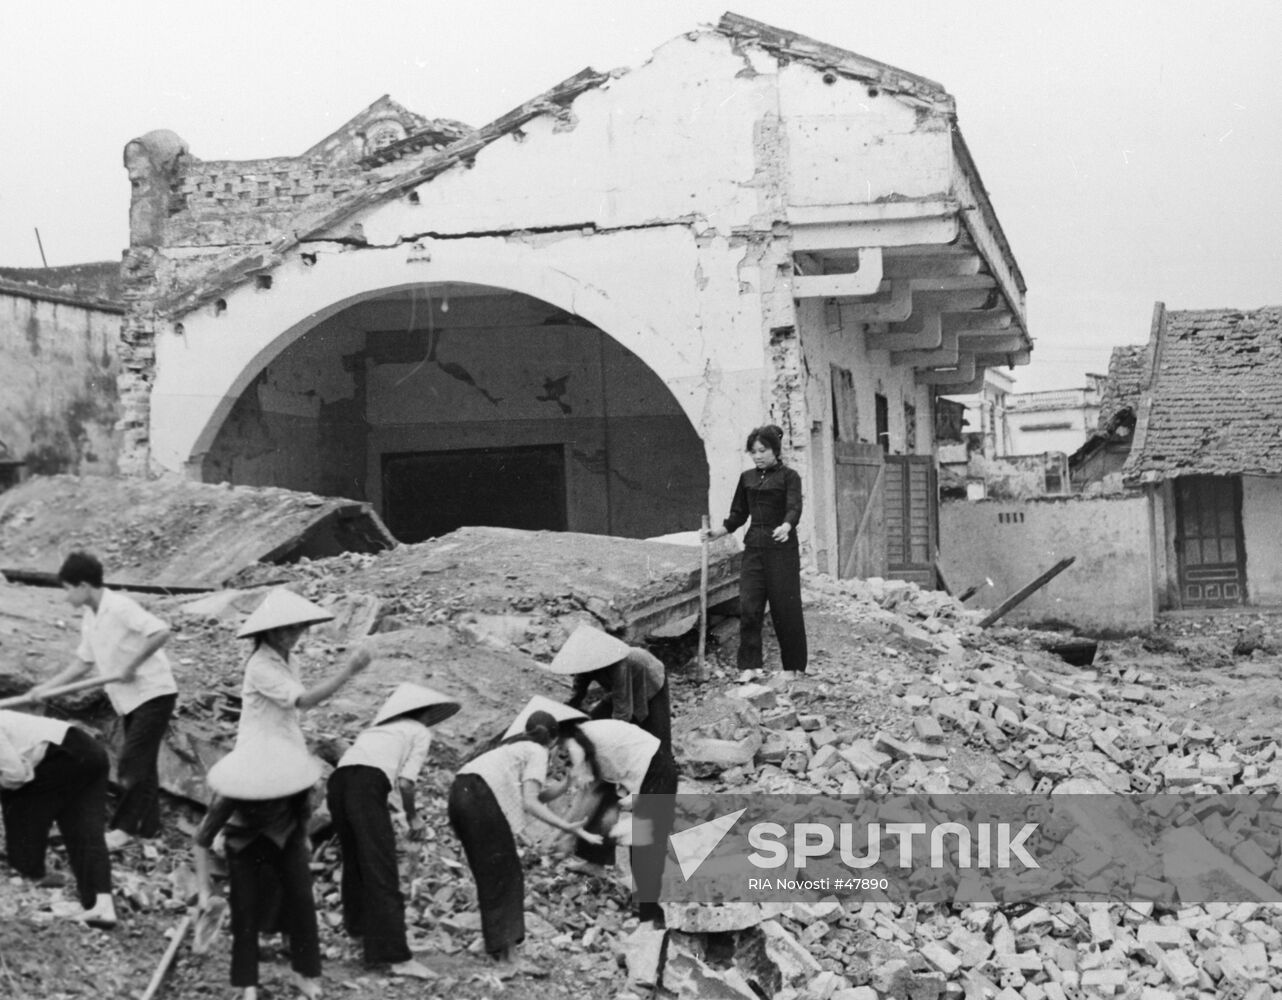 School American bomb debris Vietnam